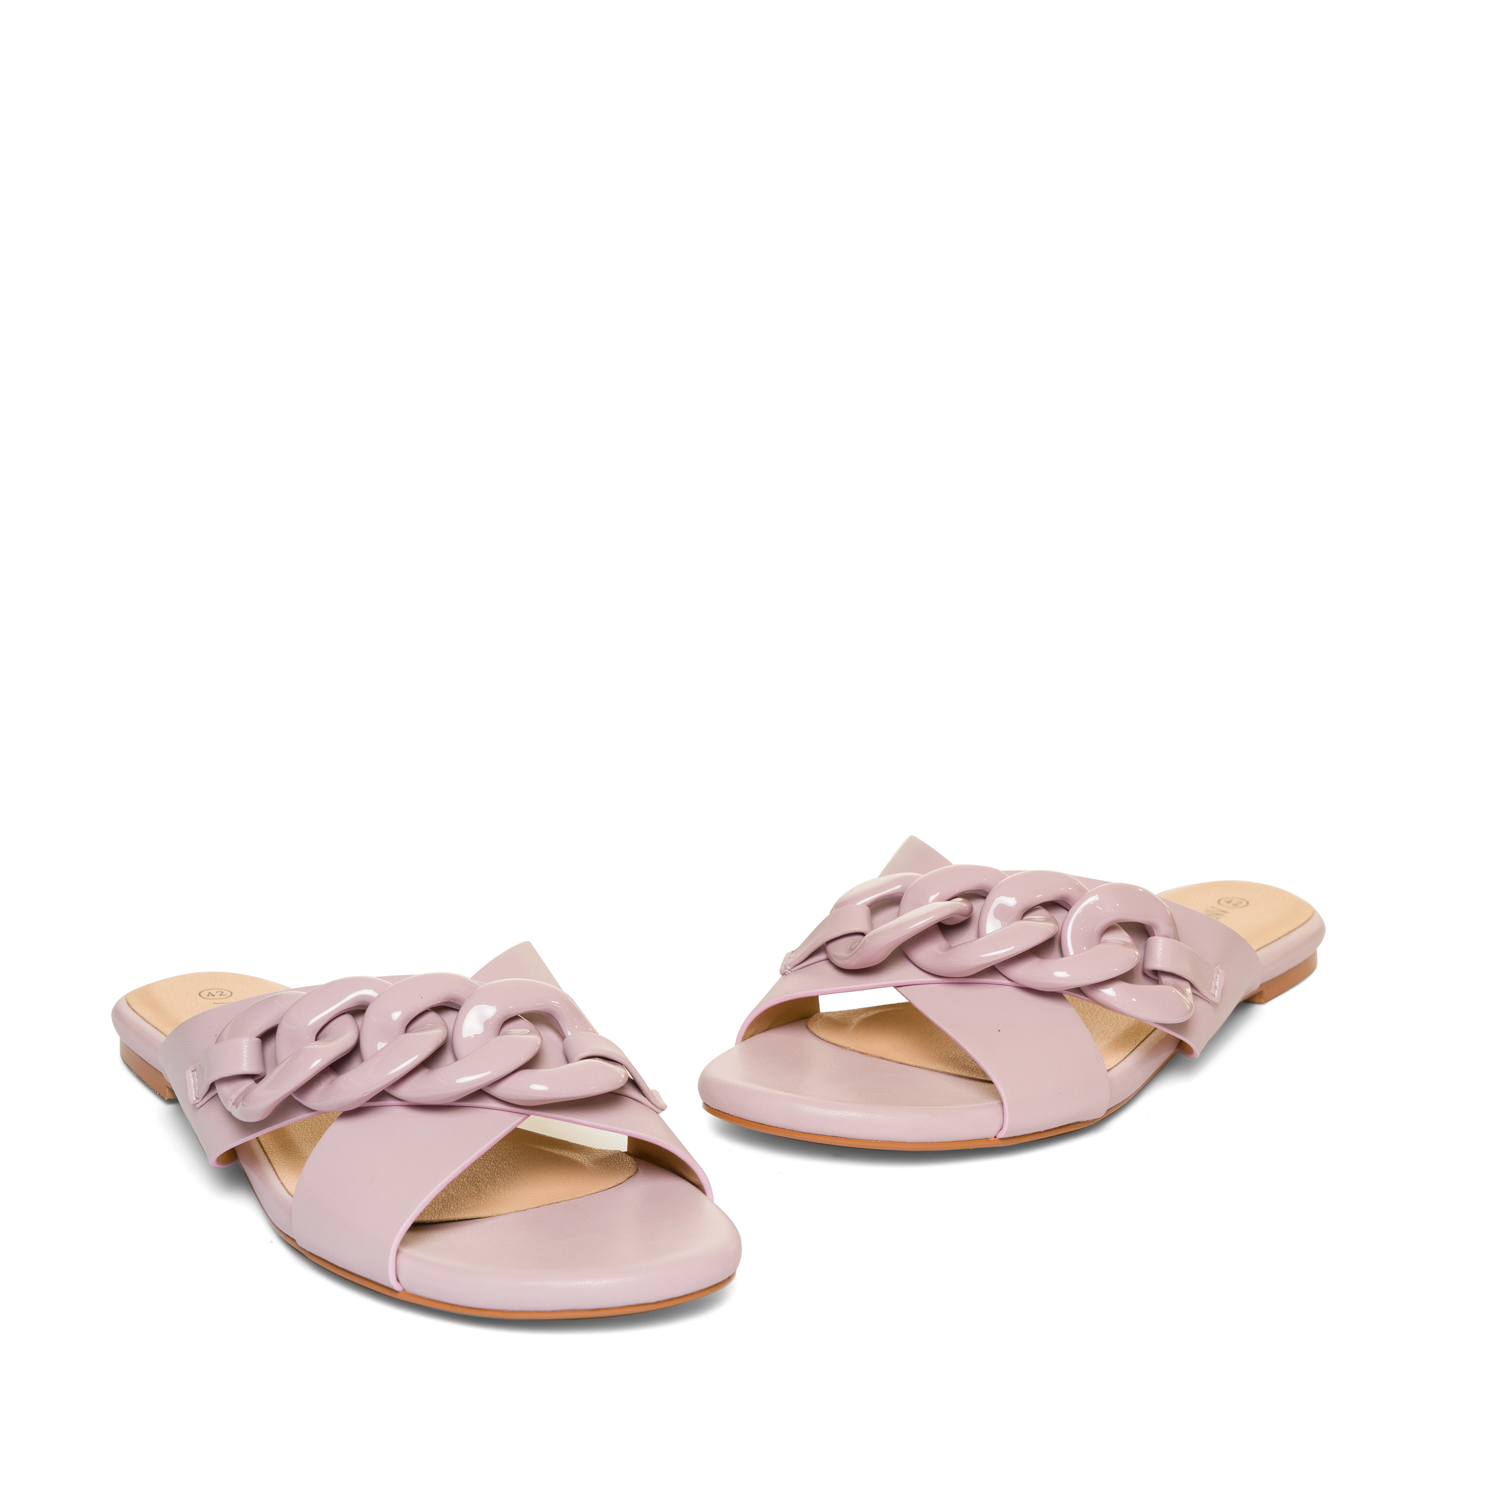 Sandalia plana en soft color Malva 